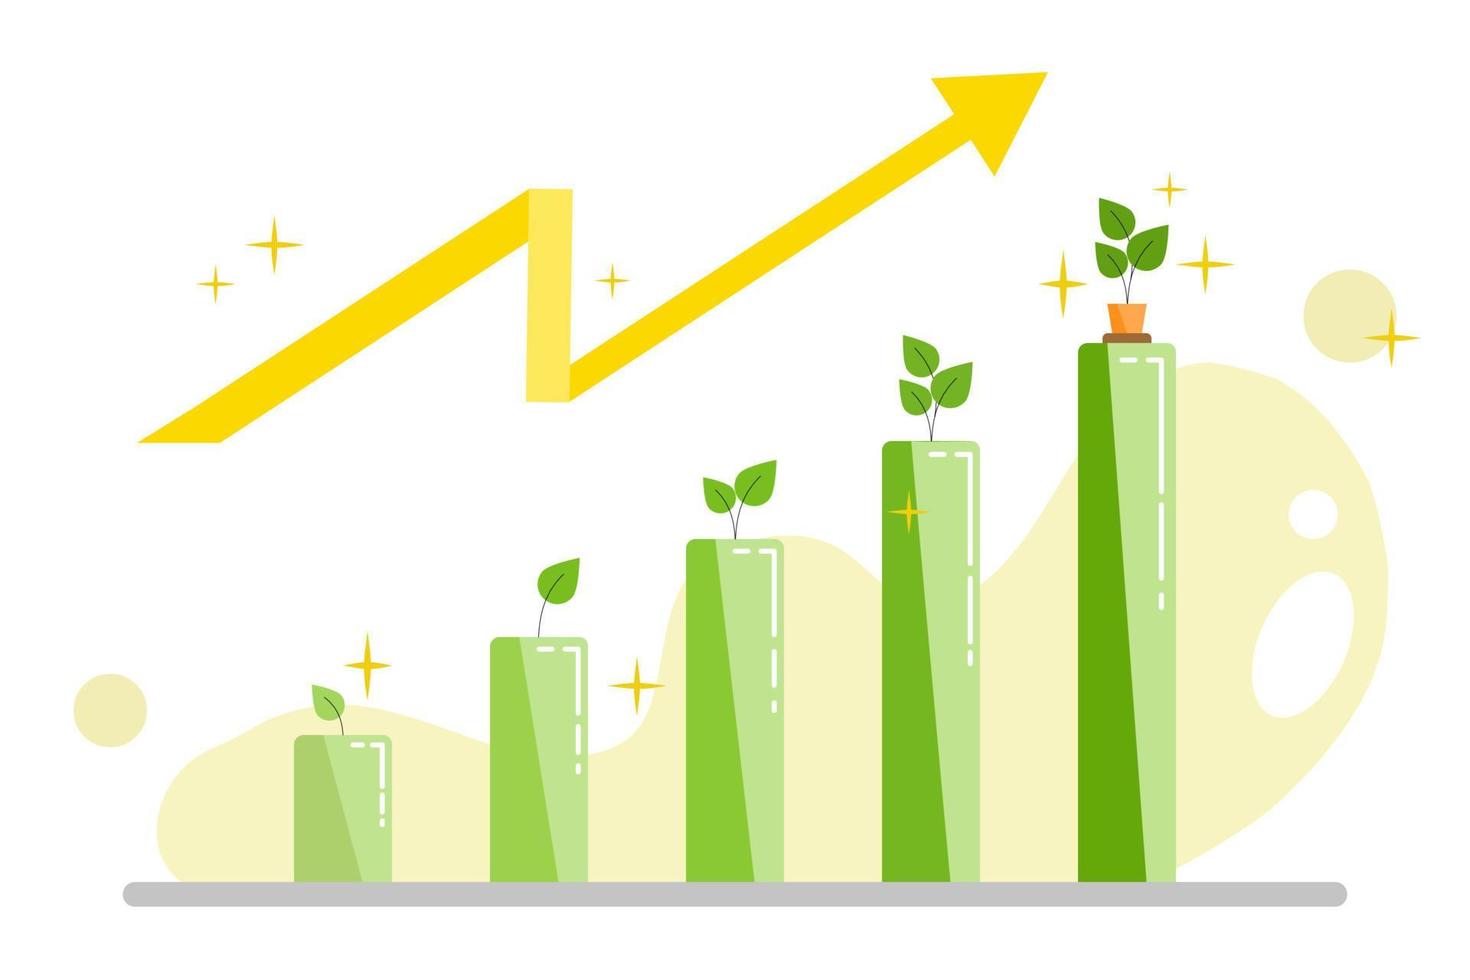 courbe de croissance avec la croissance des plantes. augmentation de la démonstration du taux de croissance avec la croissance de la plante et du graphique à barres sur fond blanc. illustration vectorielle jaune et vert. vecteur